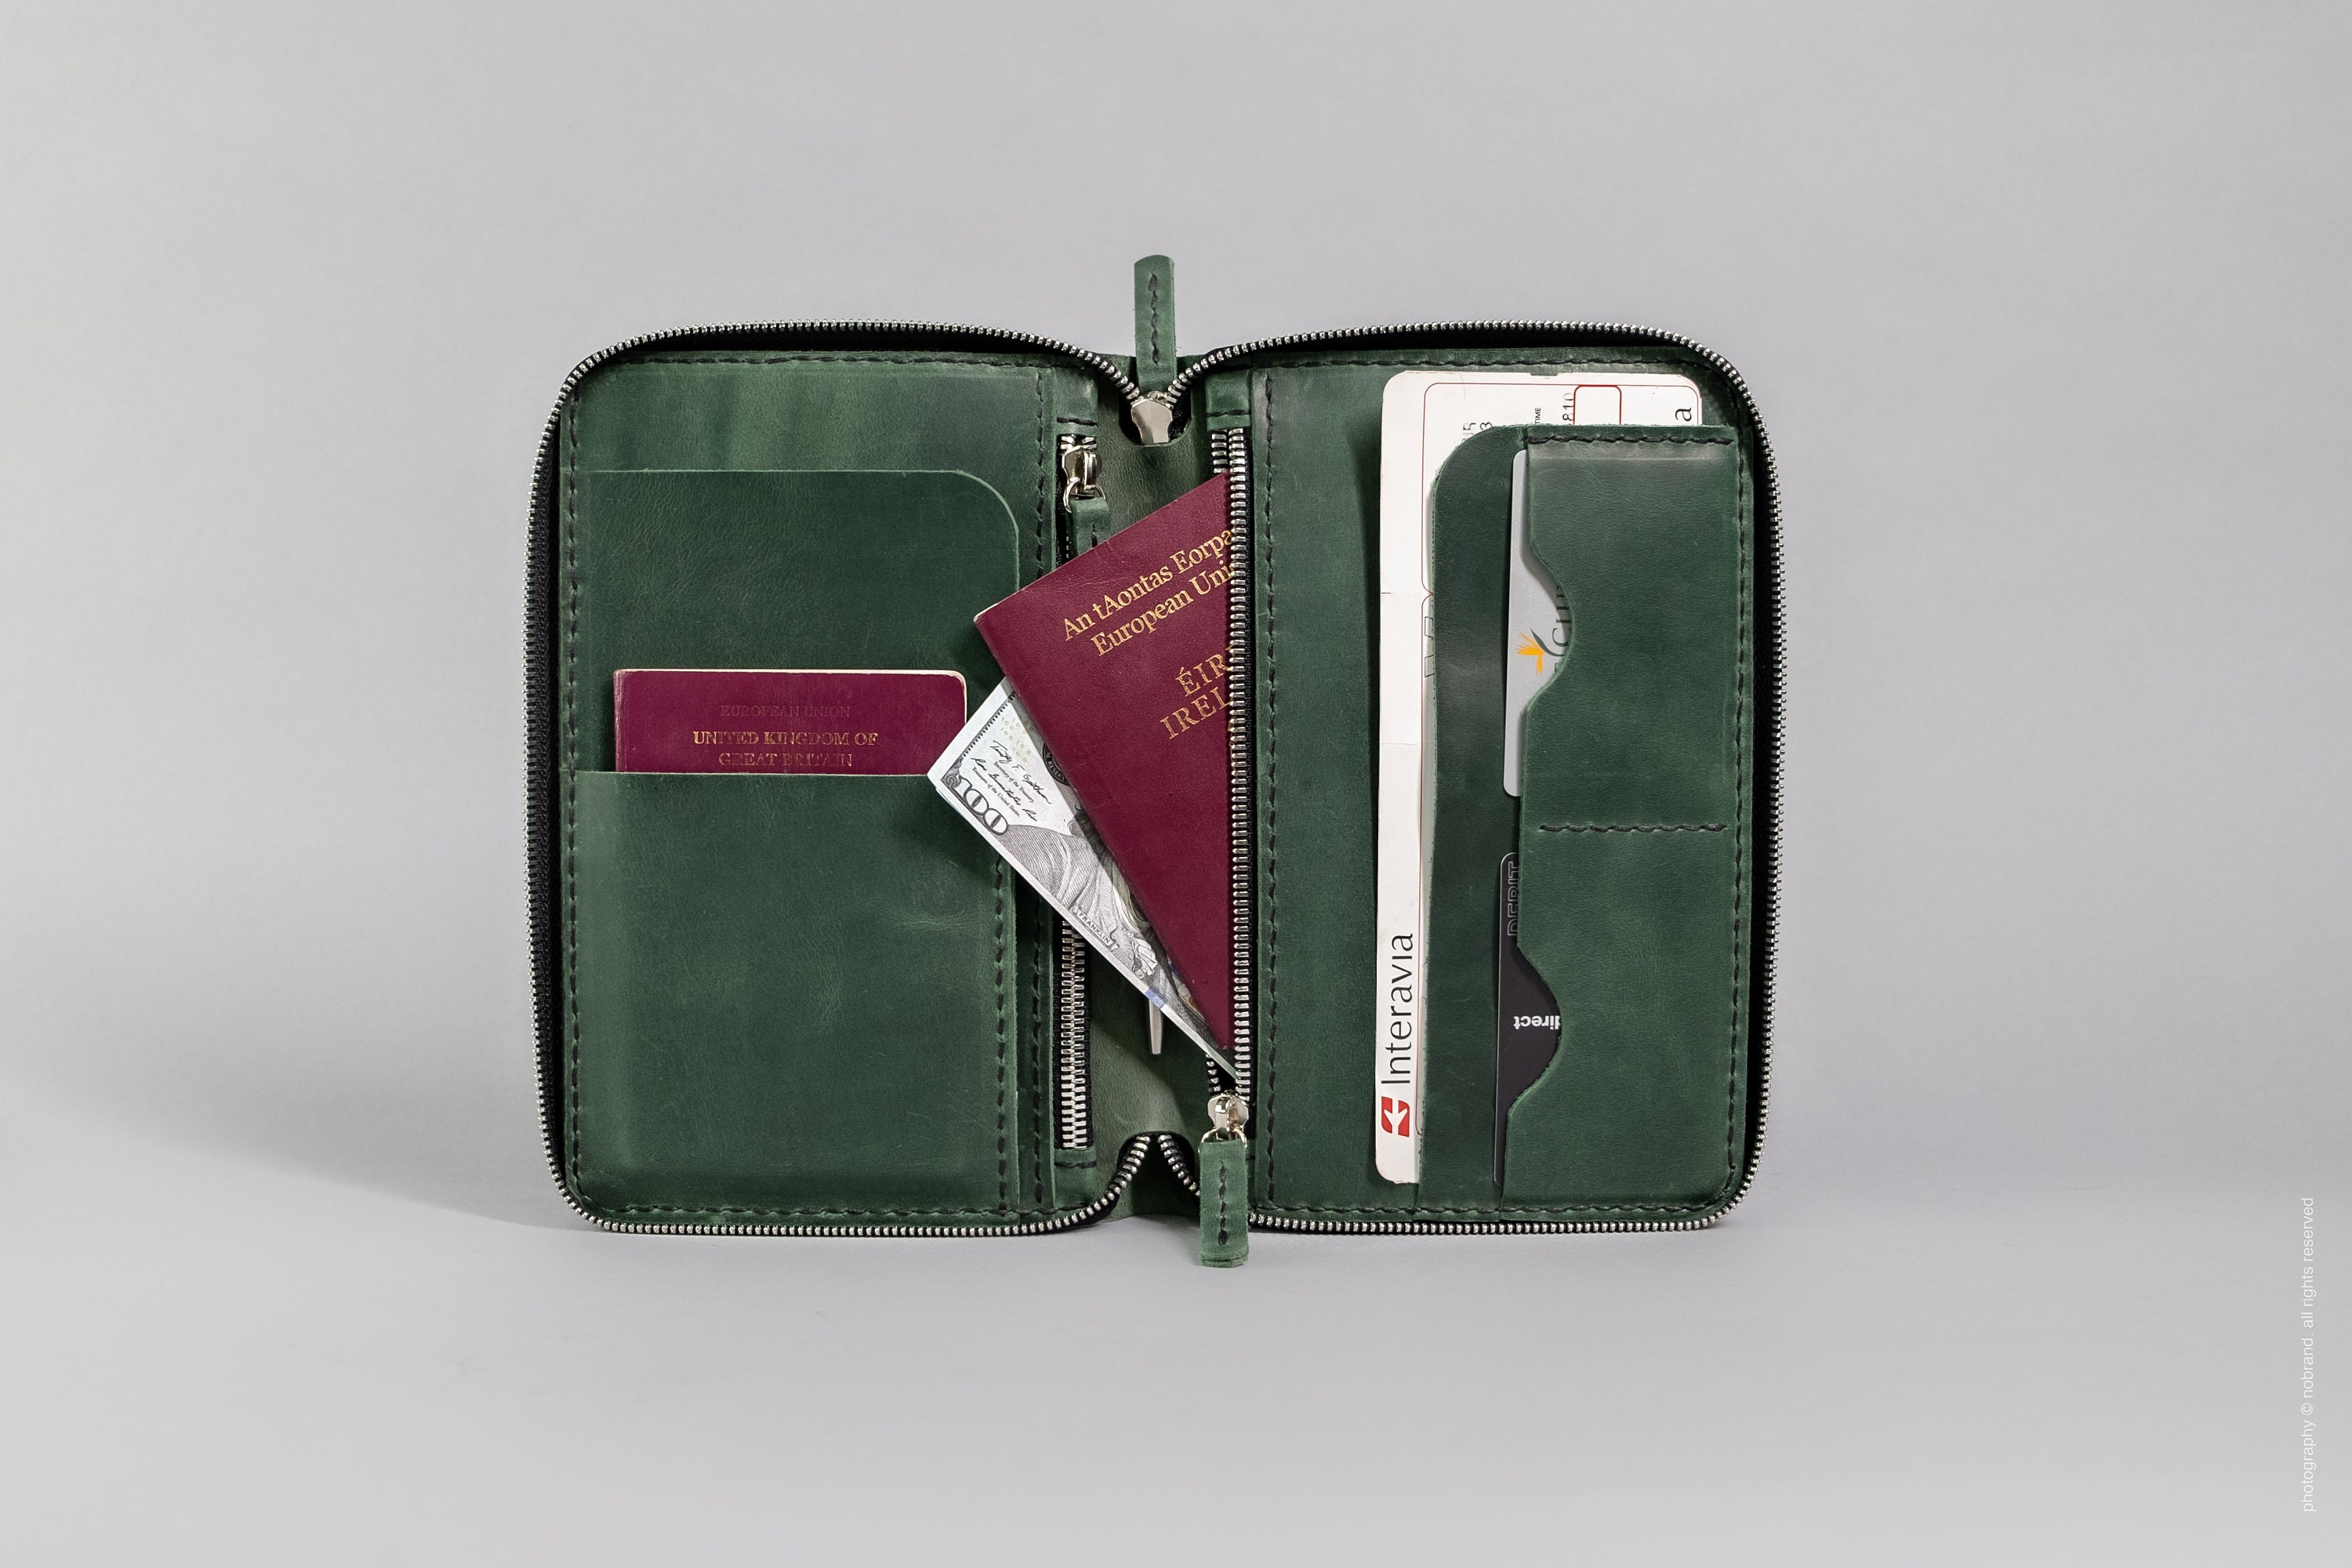 travel passport wallet zipper